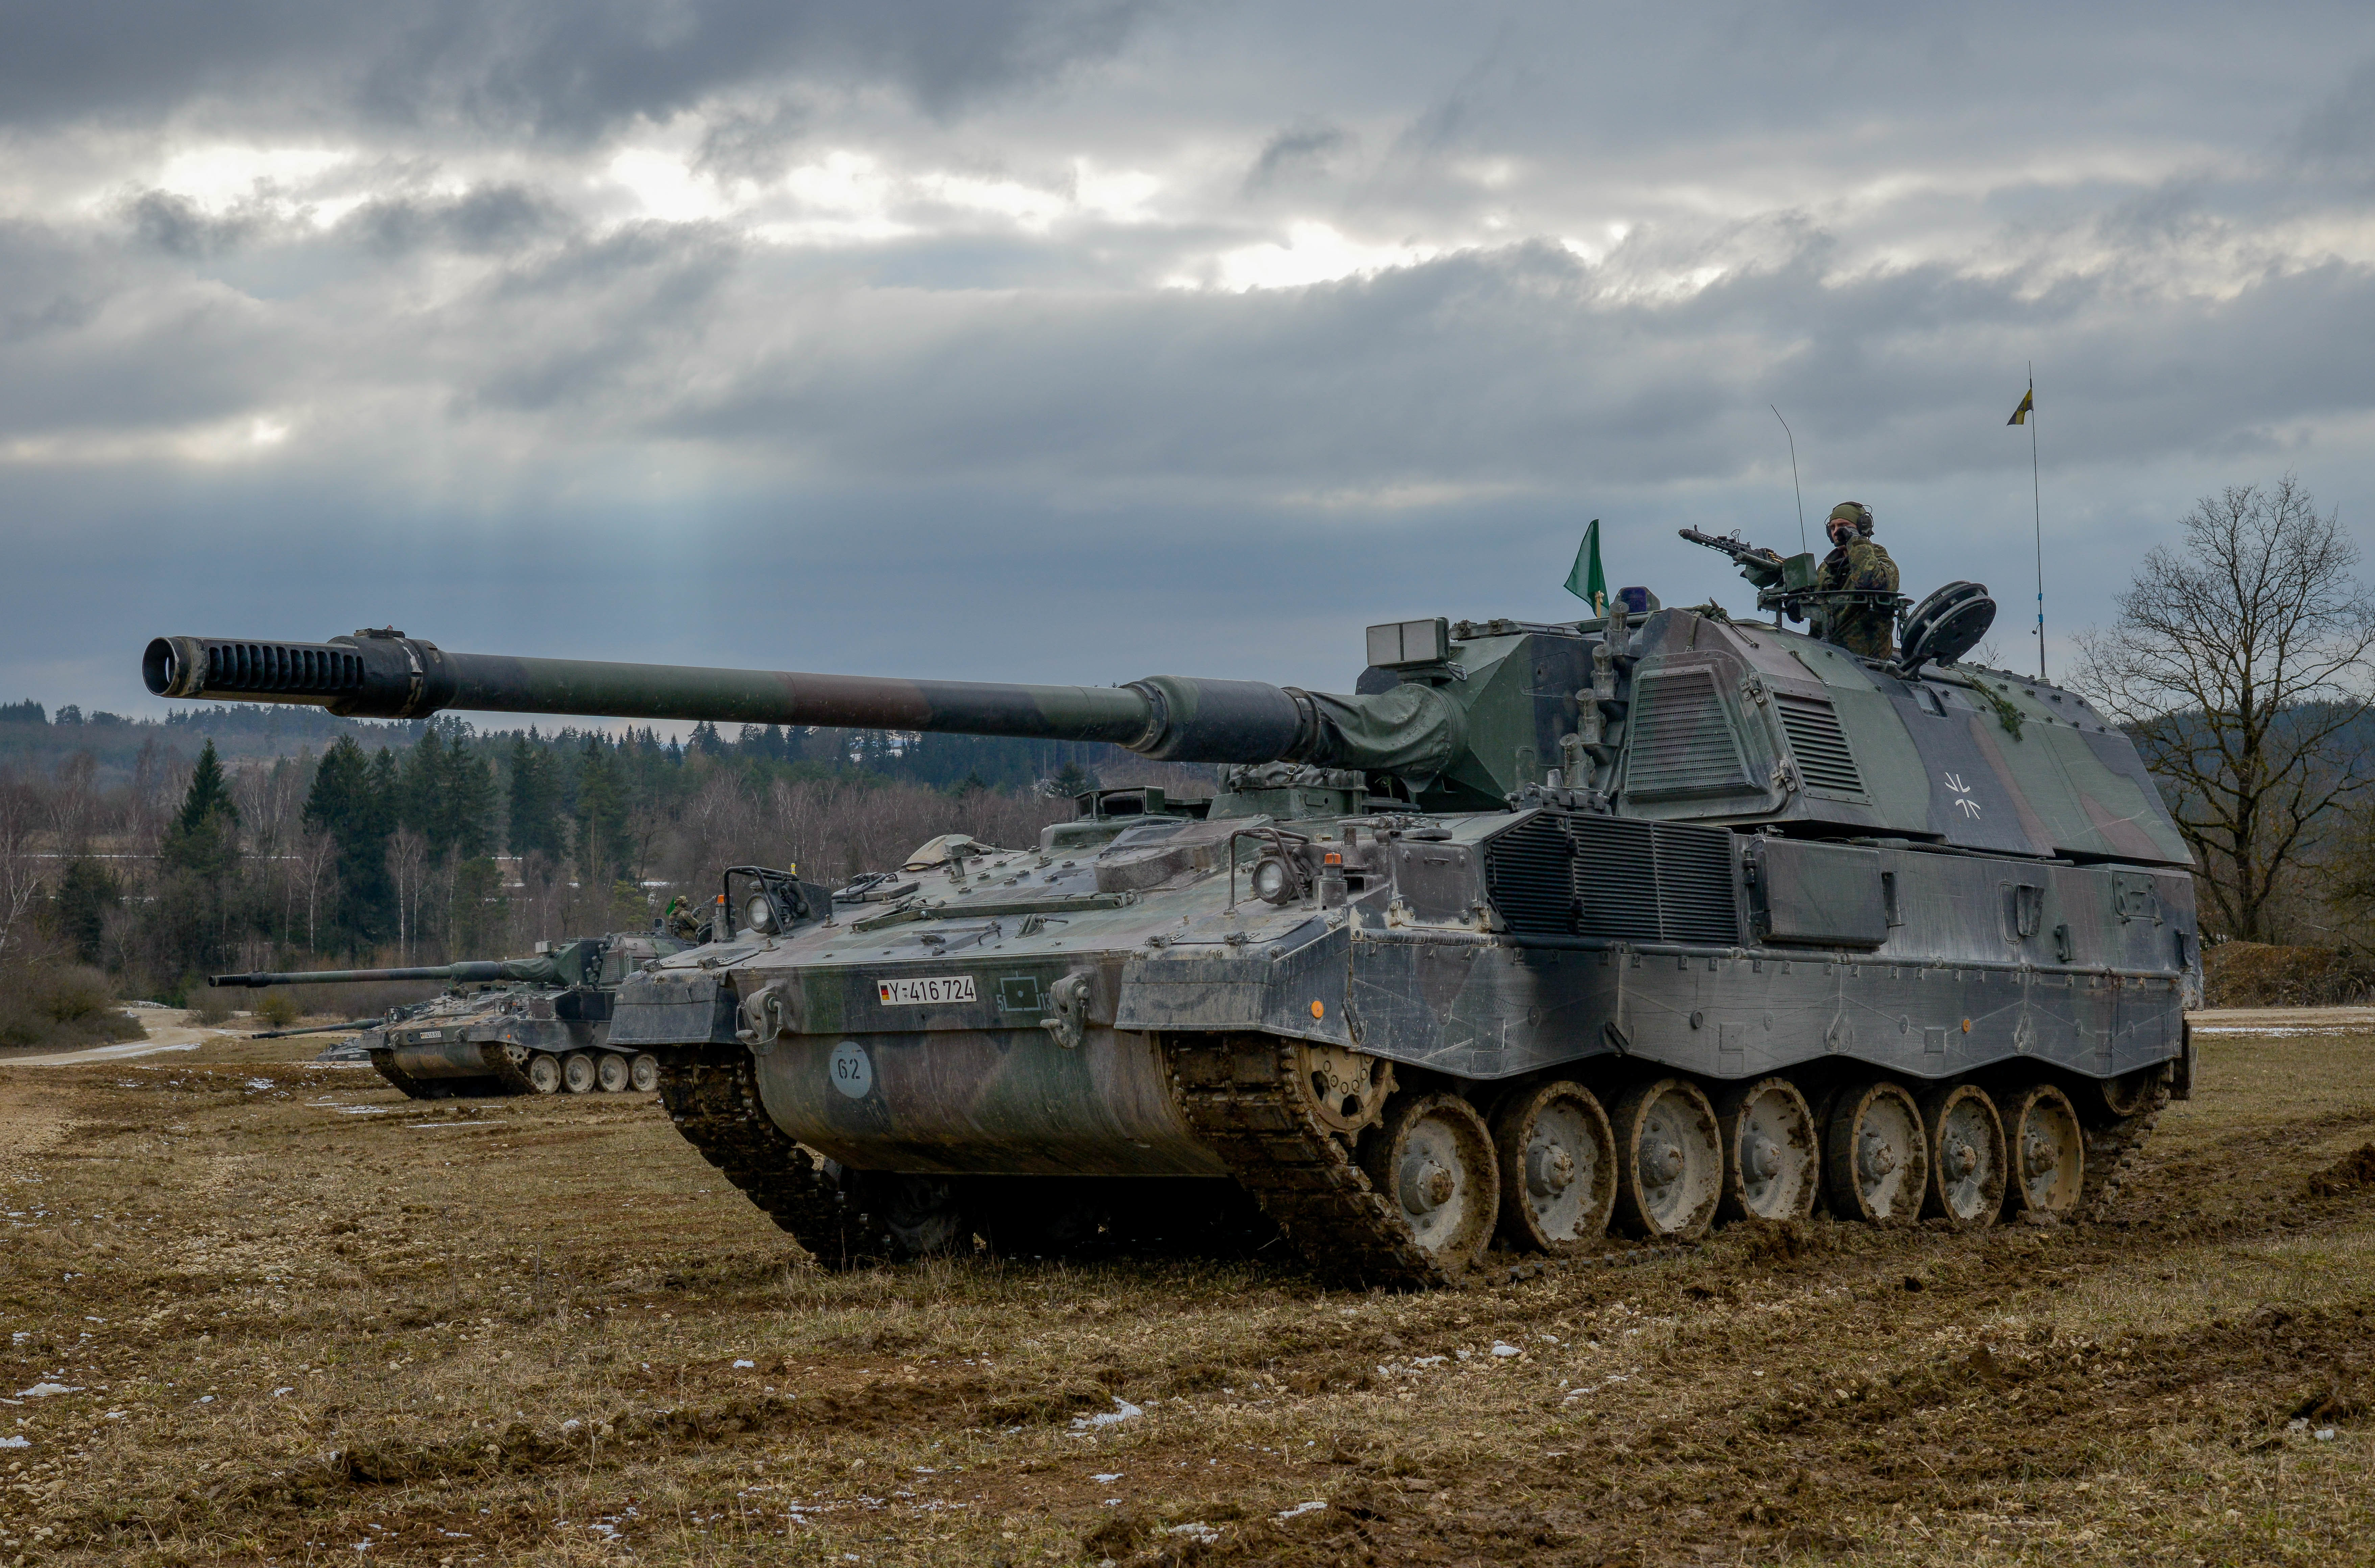 L'Ucraina non ha firmato un contratto con Krauss-Maffei Wegmann per l'acquisto di 100 unità di artiglieria semovente PzH 2000.